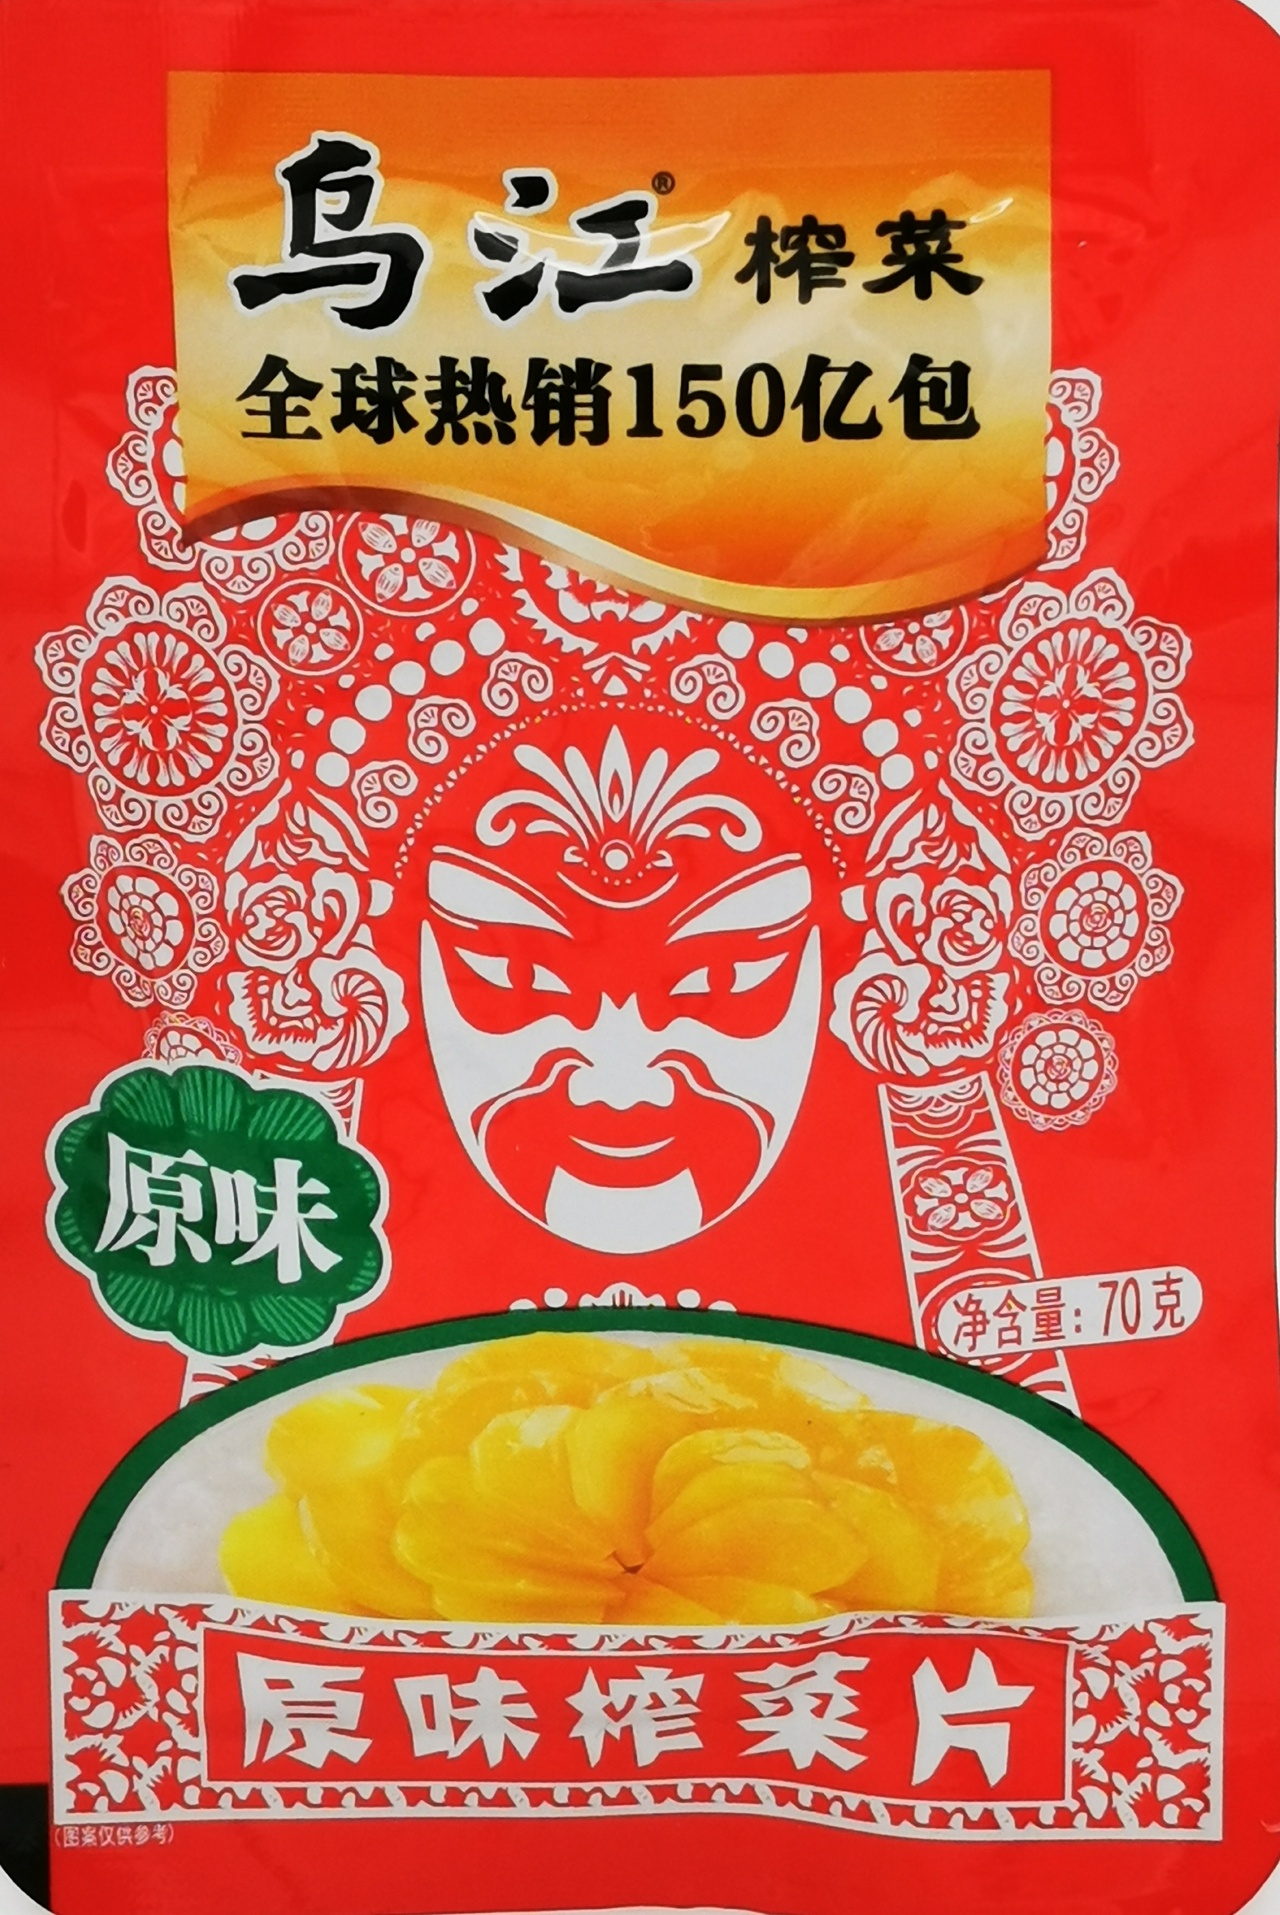 Wujiang konserverad senap skivad – original 70g